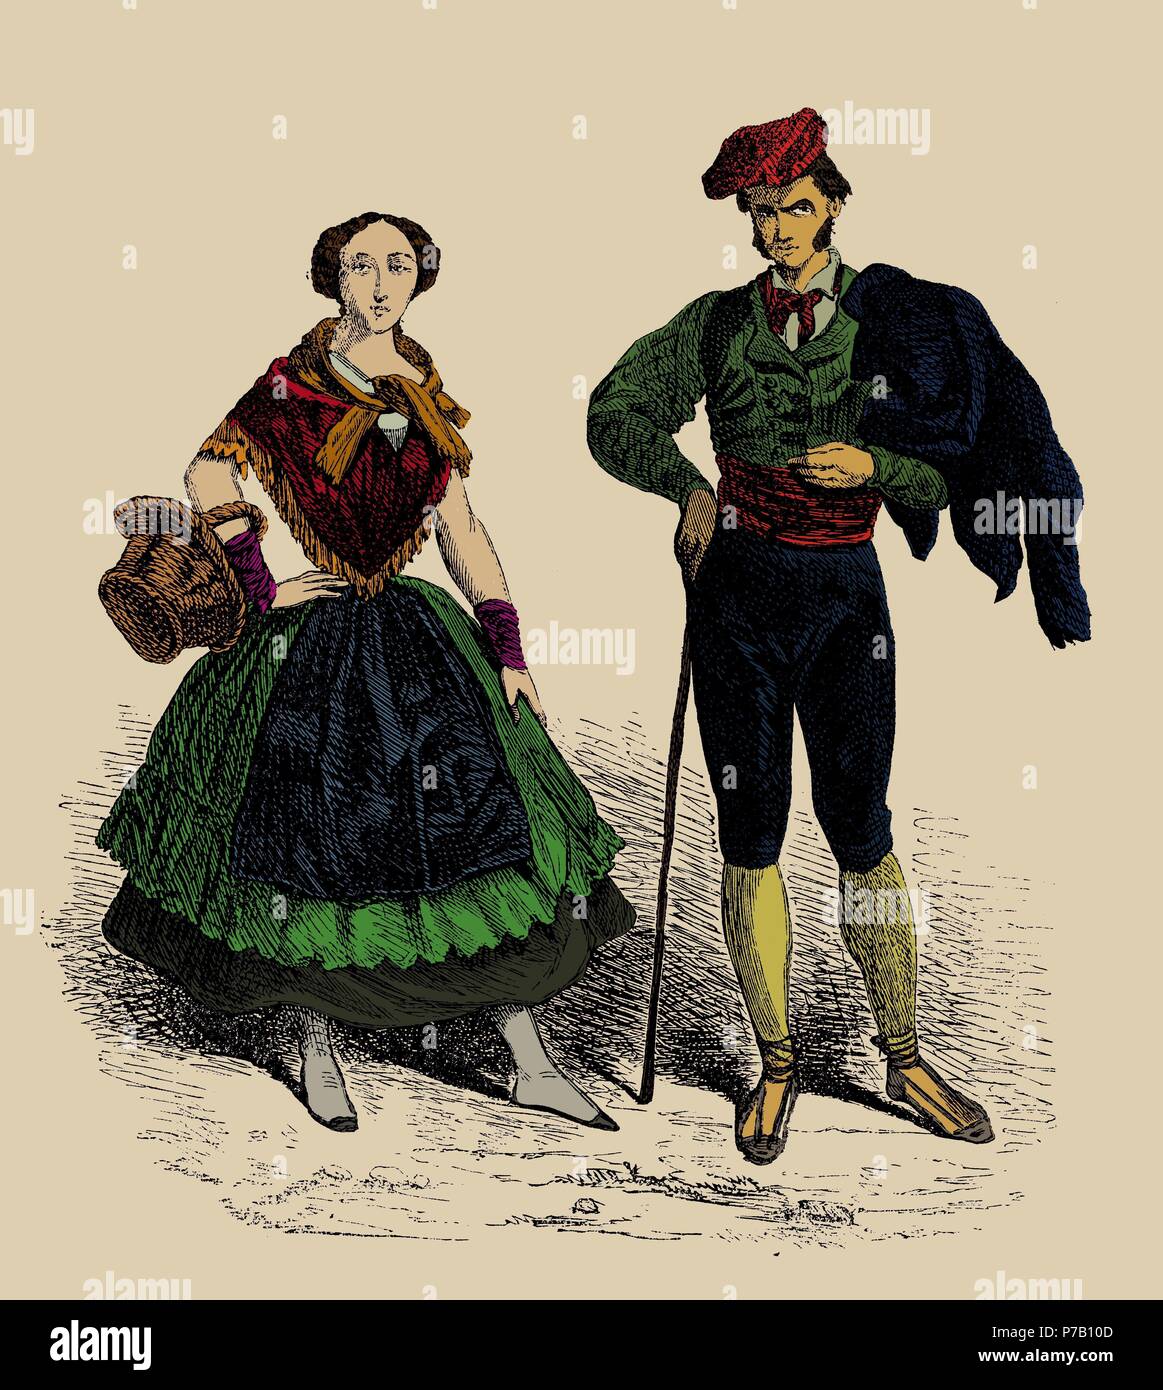 España. Catalunya. Tipos barceloneses a principios del siglo XIX. Grabado de 1872 coloreado. Stock Photo